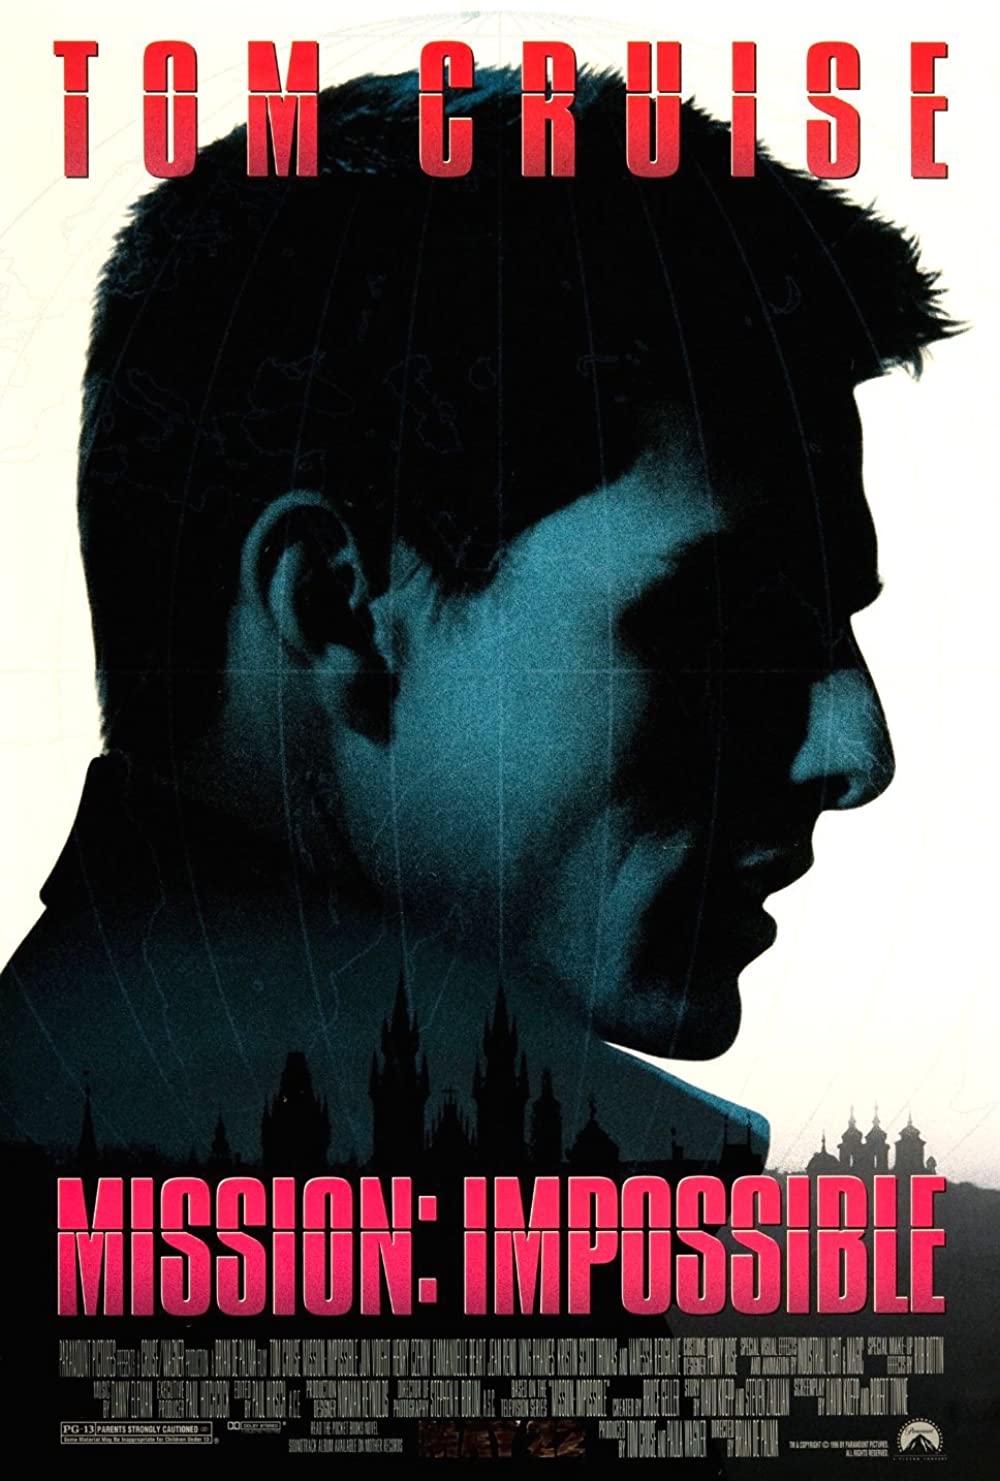 ดูหนังออนไลน์ฟรี Mission: Impossible ผ่าปฏิบัติการสะท้านโลก